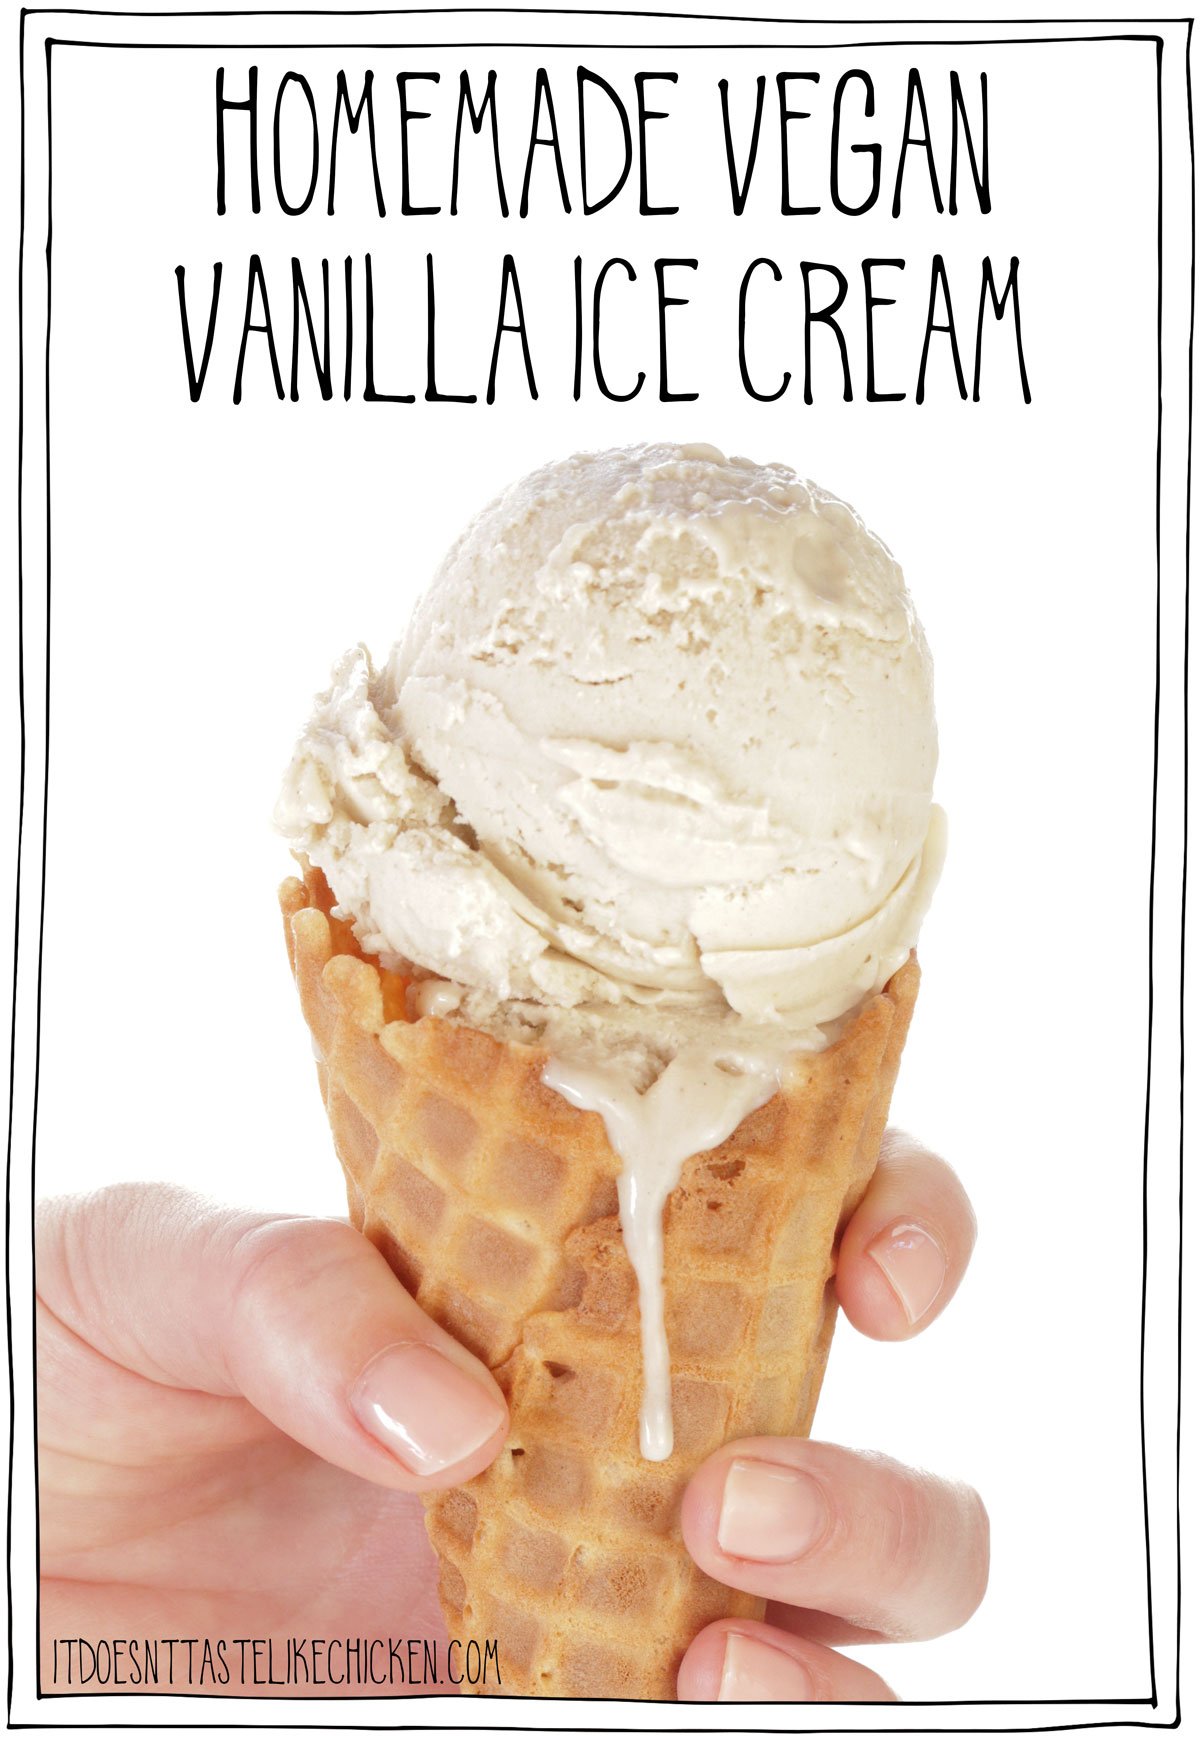 Seulement 4 ingrédients pour faire la MEILLEURE glace à la vanille vegan !  Cette recette de crème glacée maison est facile à faire, super riche et crémeuse - c'est la meilleure glace que j'ai jamais goûtée, végétalienne ou non !  #ça n'a pas le goût du poulet #vegan 